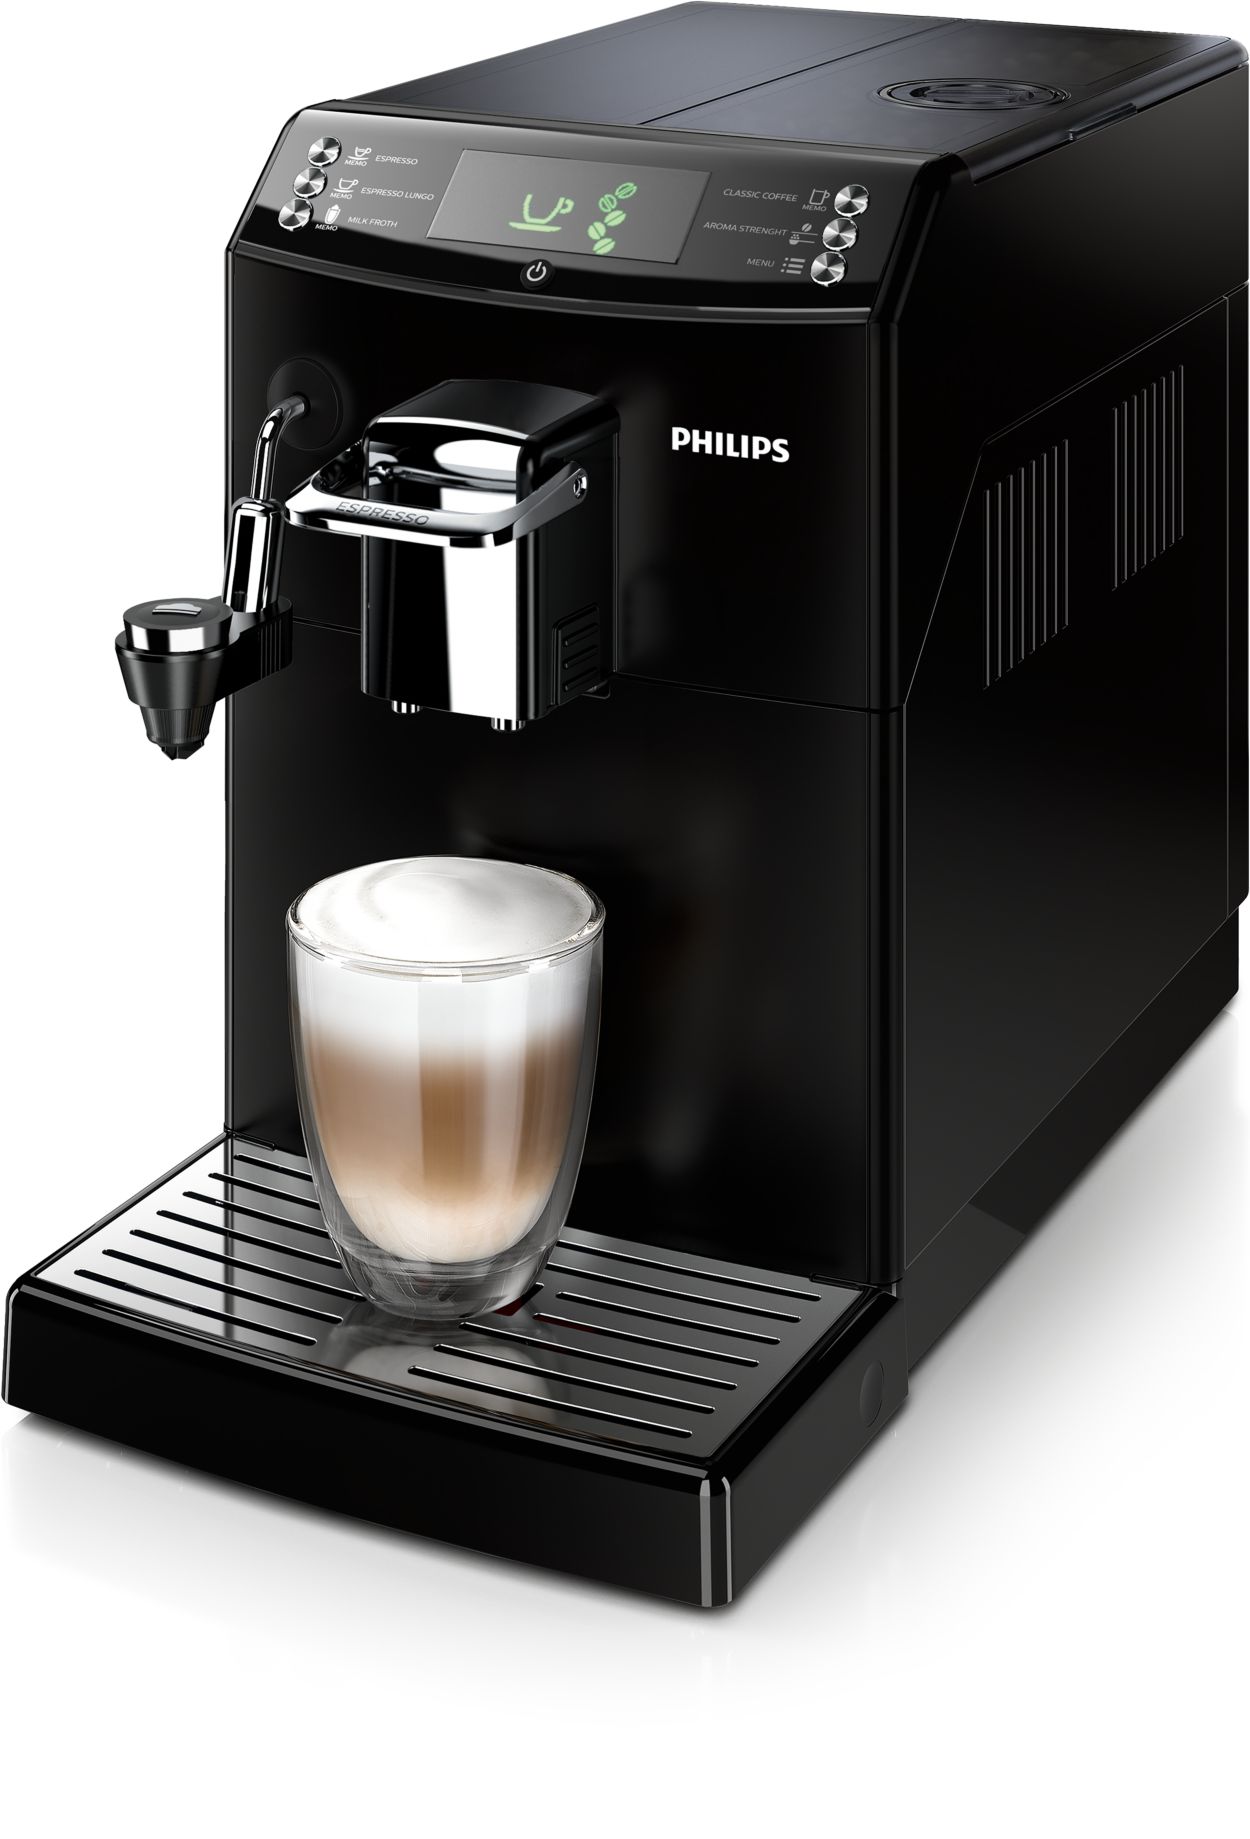 Lielisks espresso un filtrētas kafijas garša